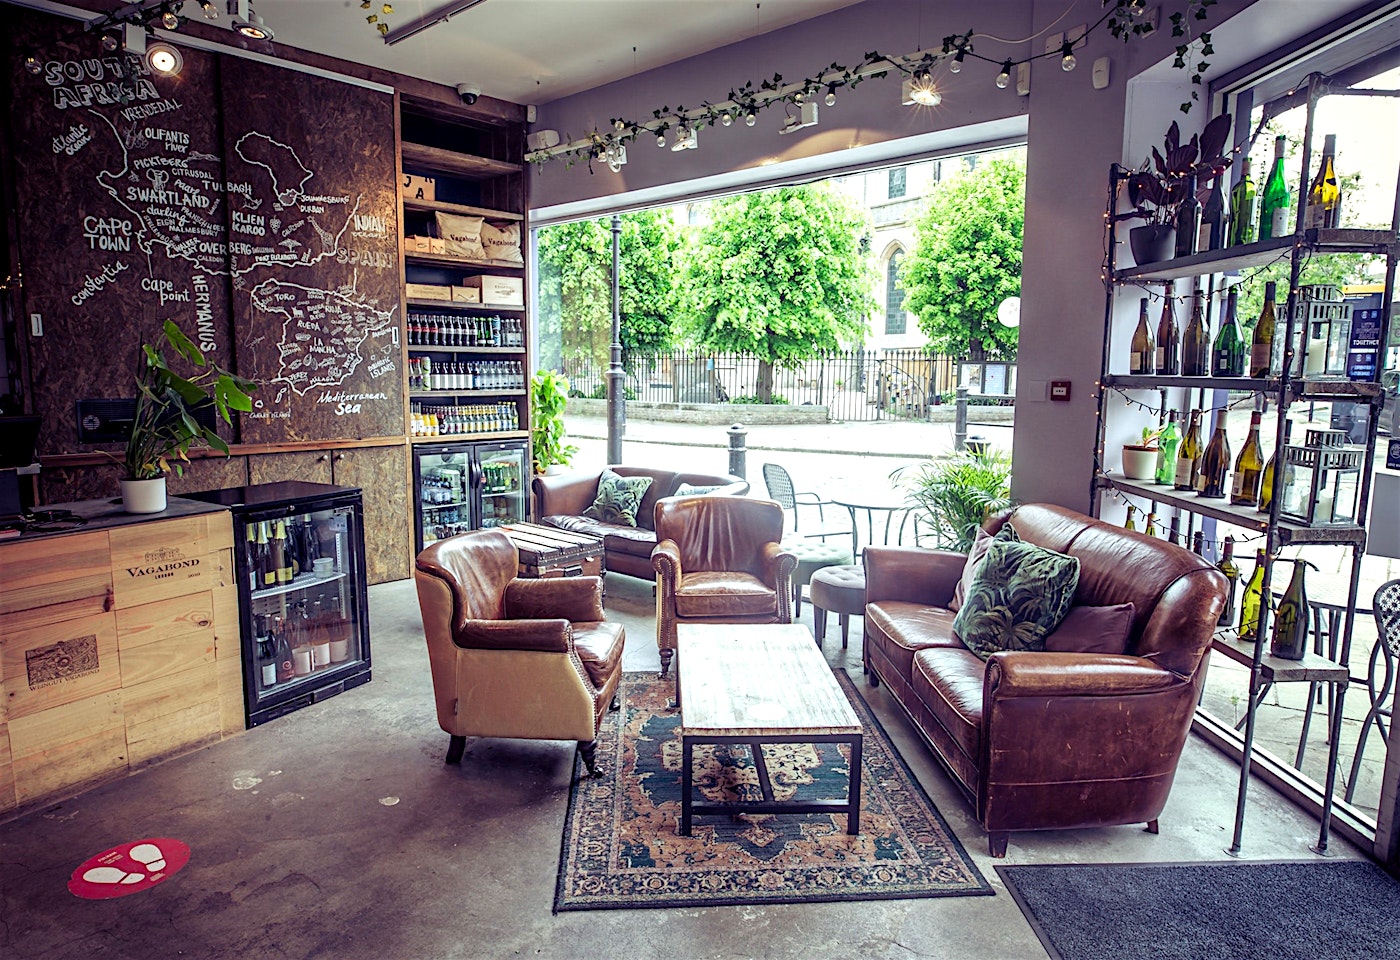 interior of vagabond wine bar in fulham london